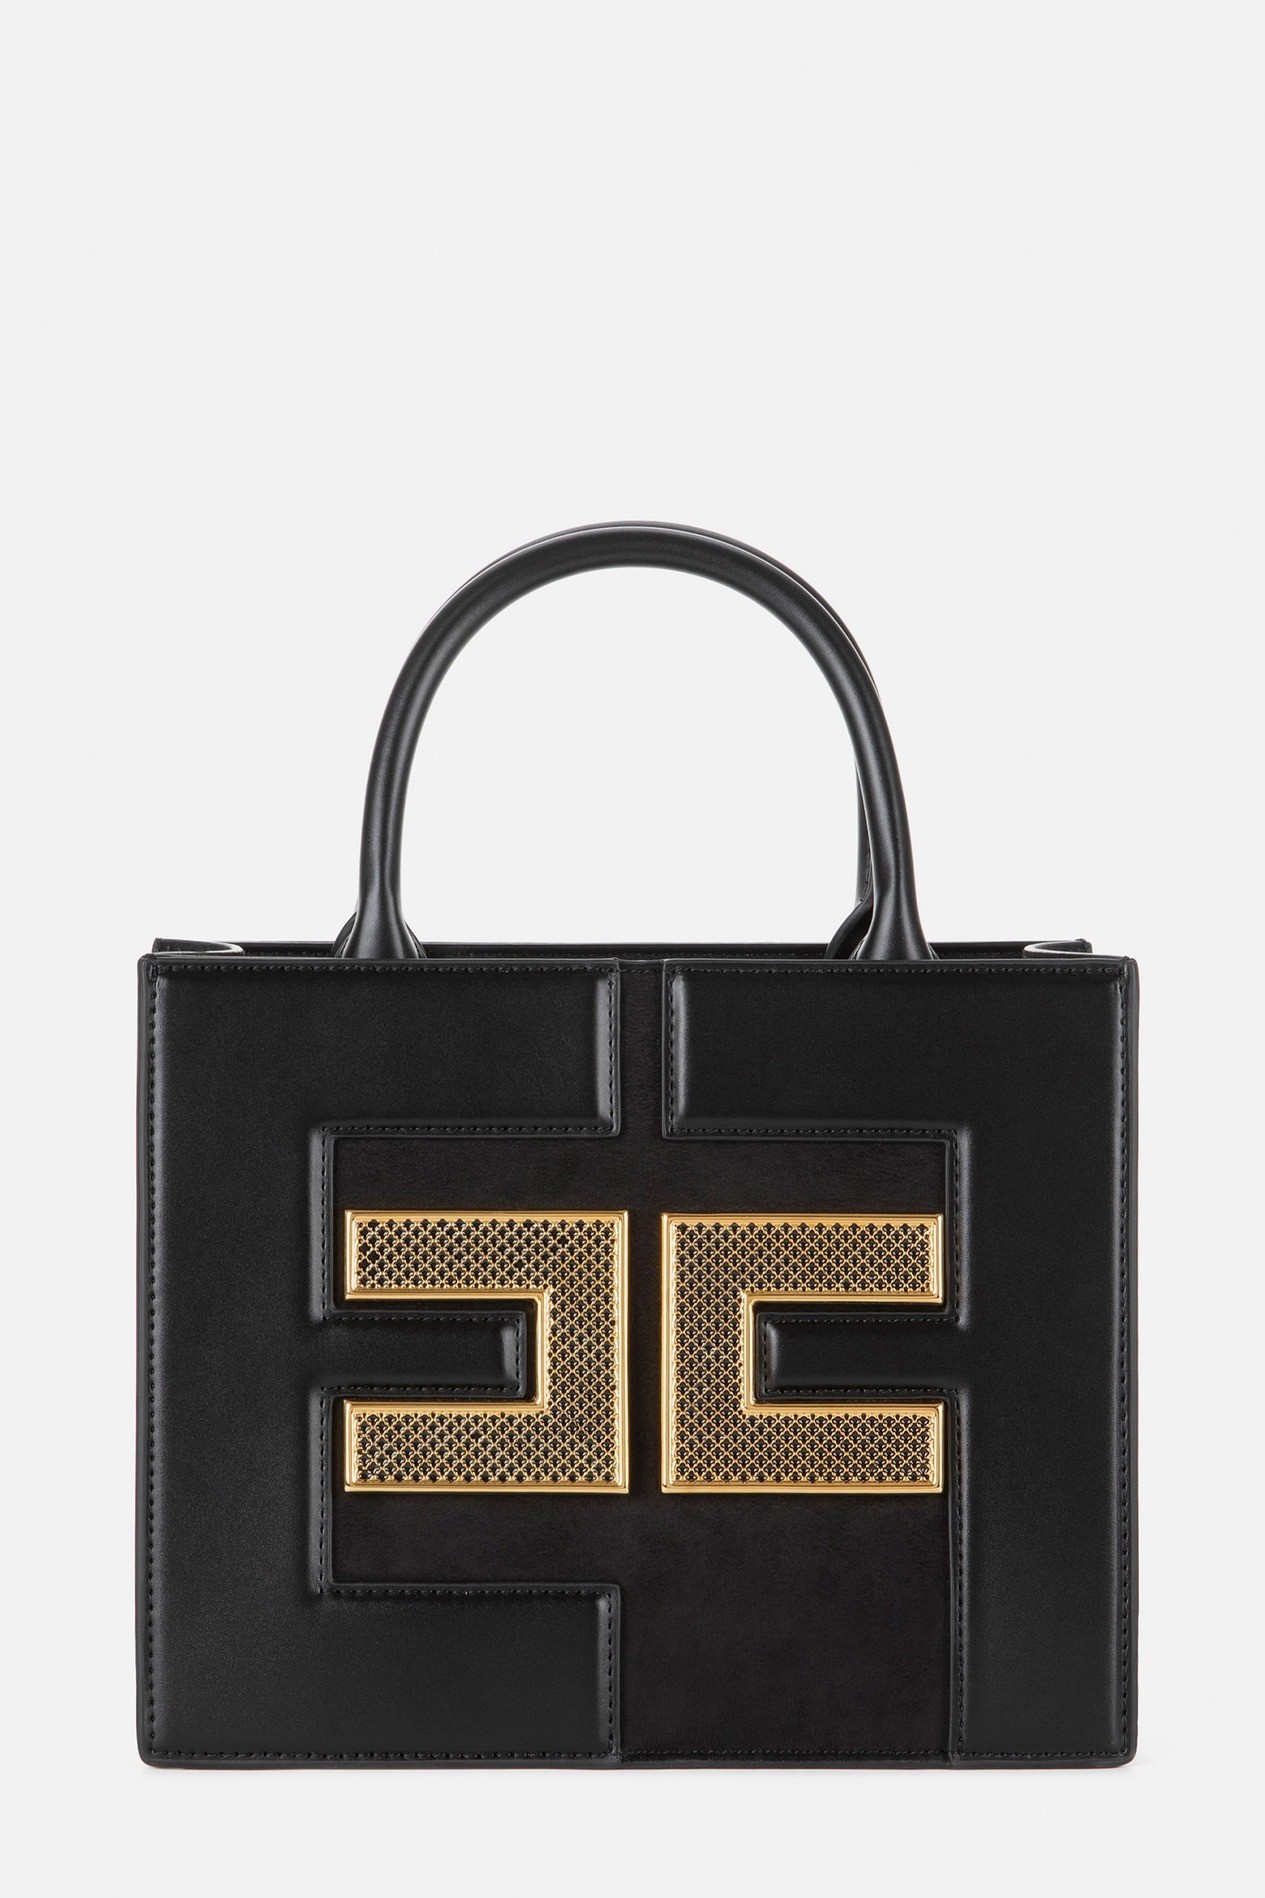  إليزابيتا فرانشي - Small handbag with mesh logo